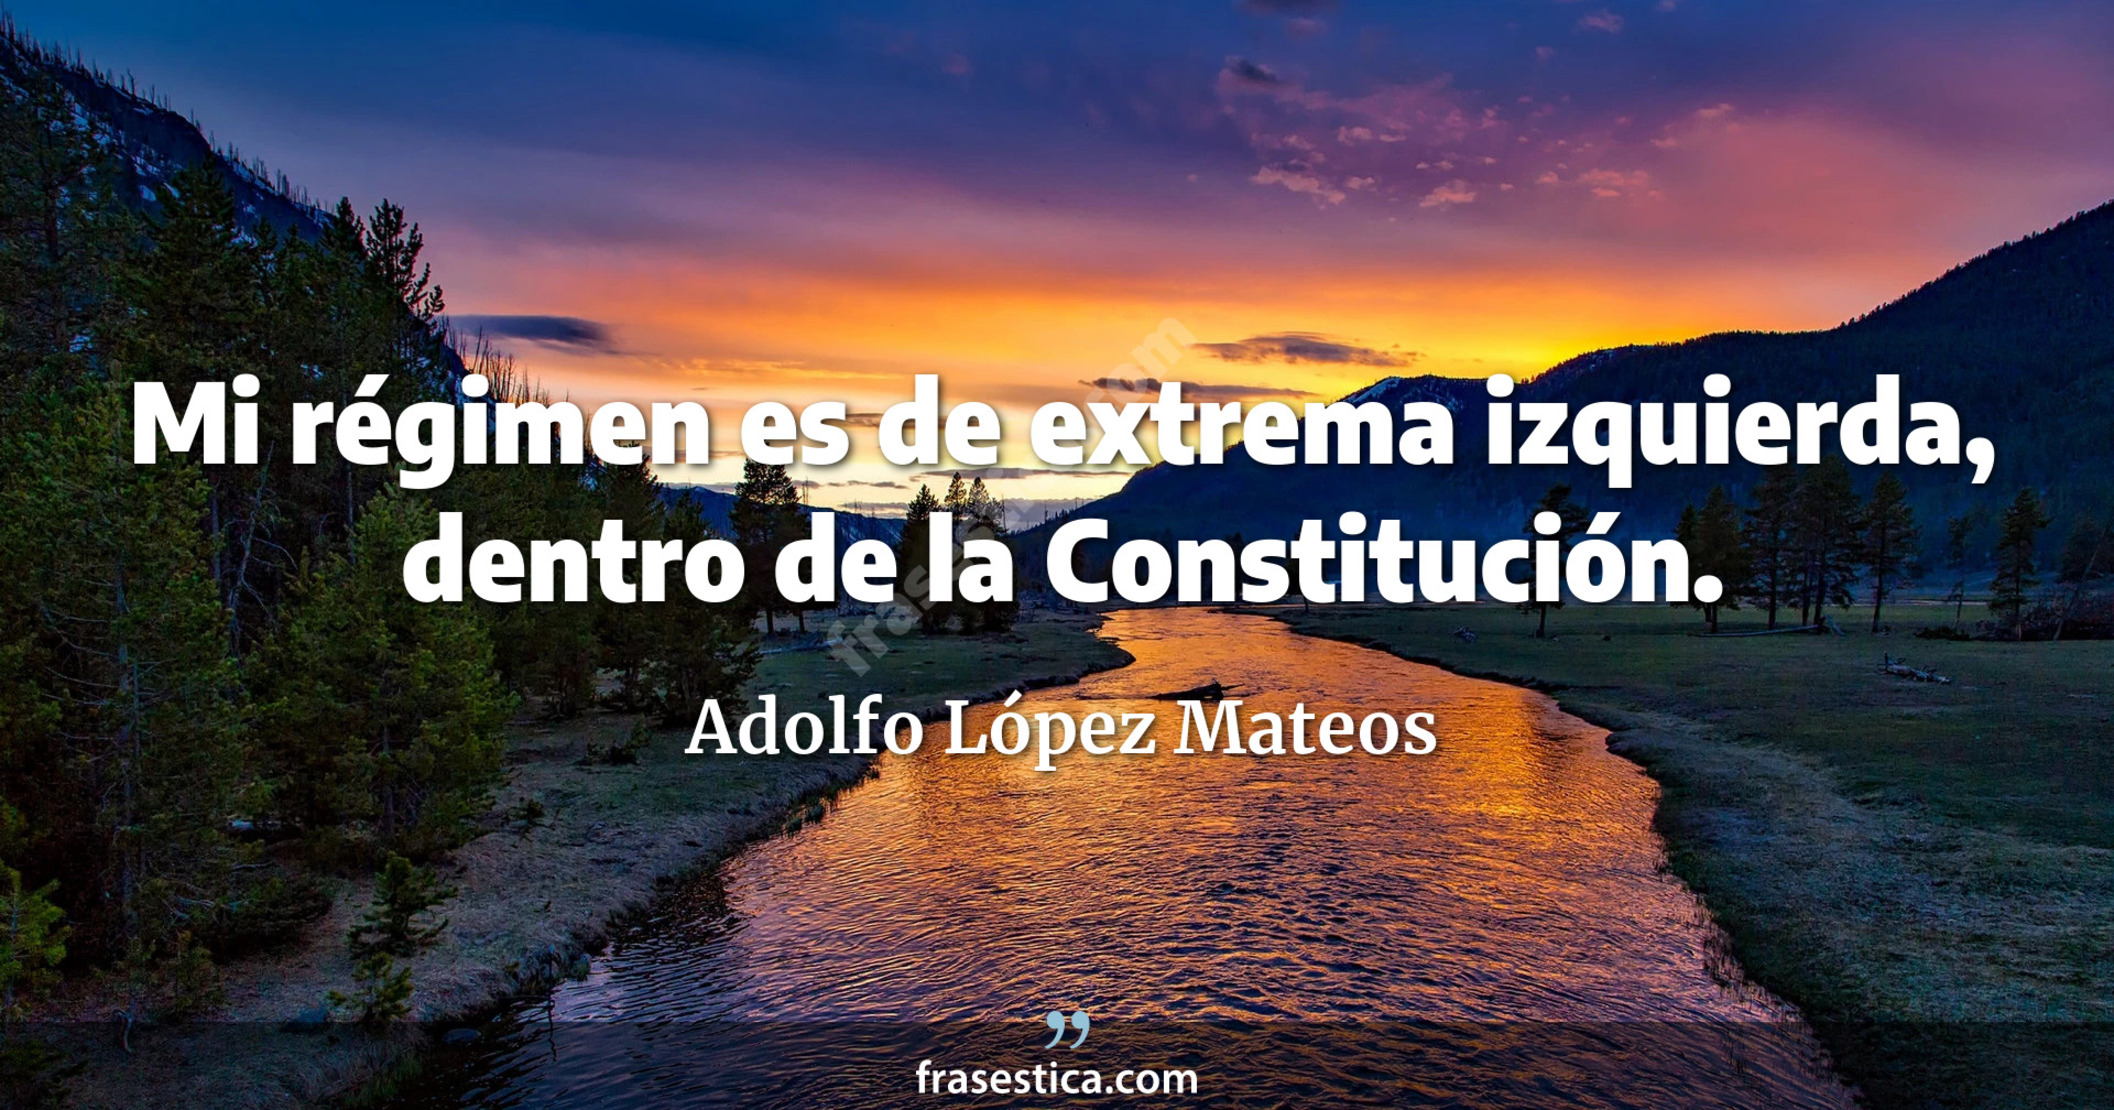 Mi régimen es de extrema izquierda, dentro de la Constitución. - Adolfo López Mateos